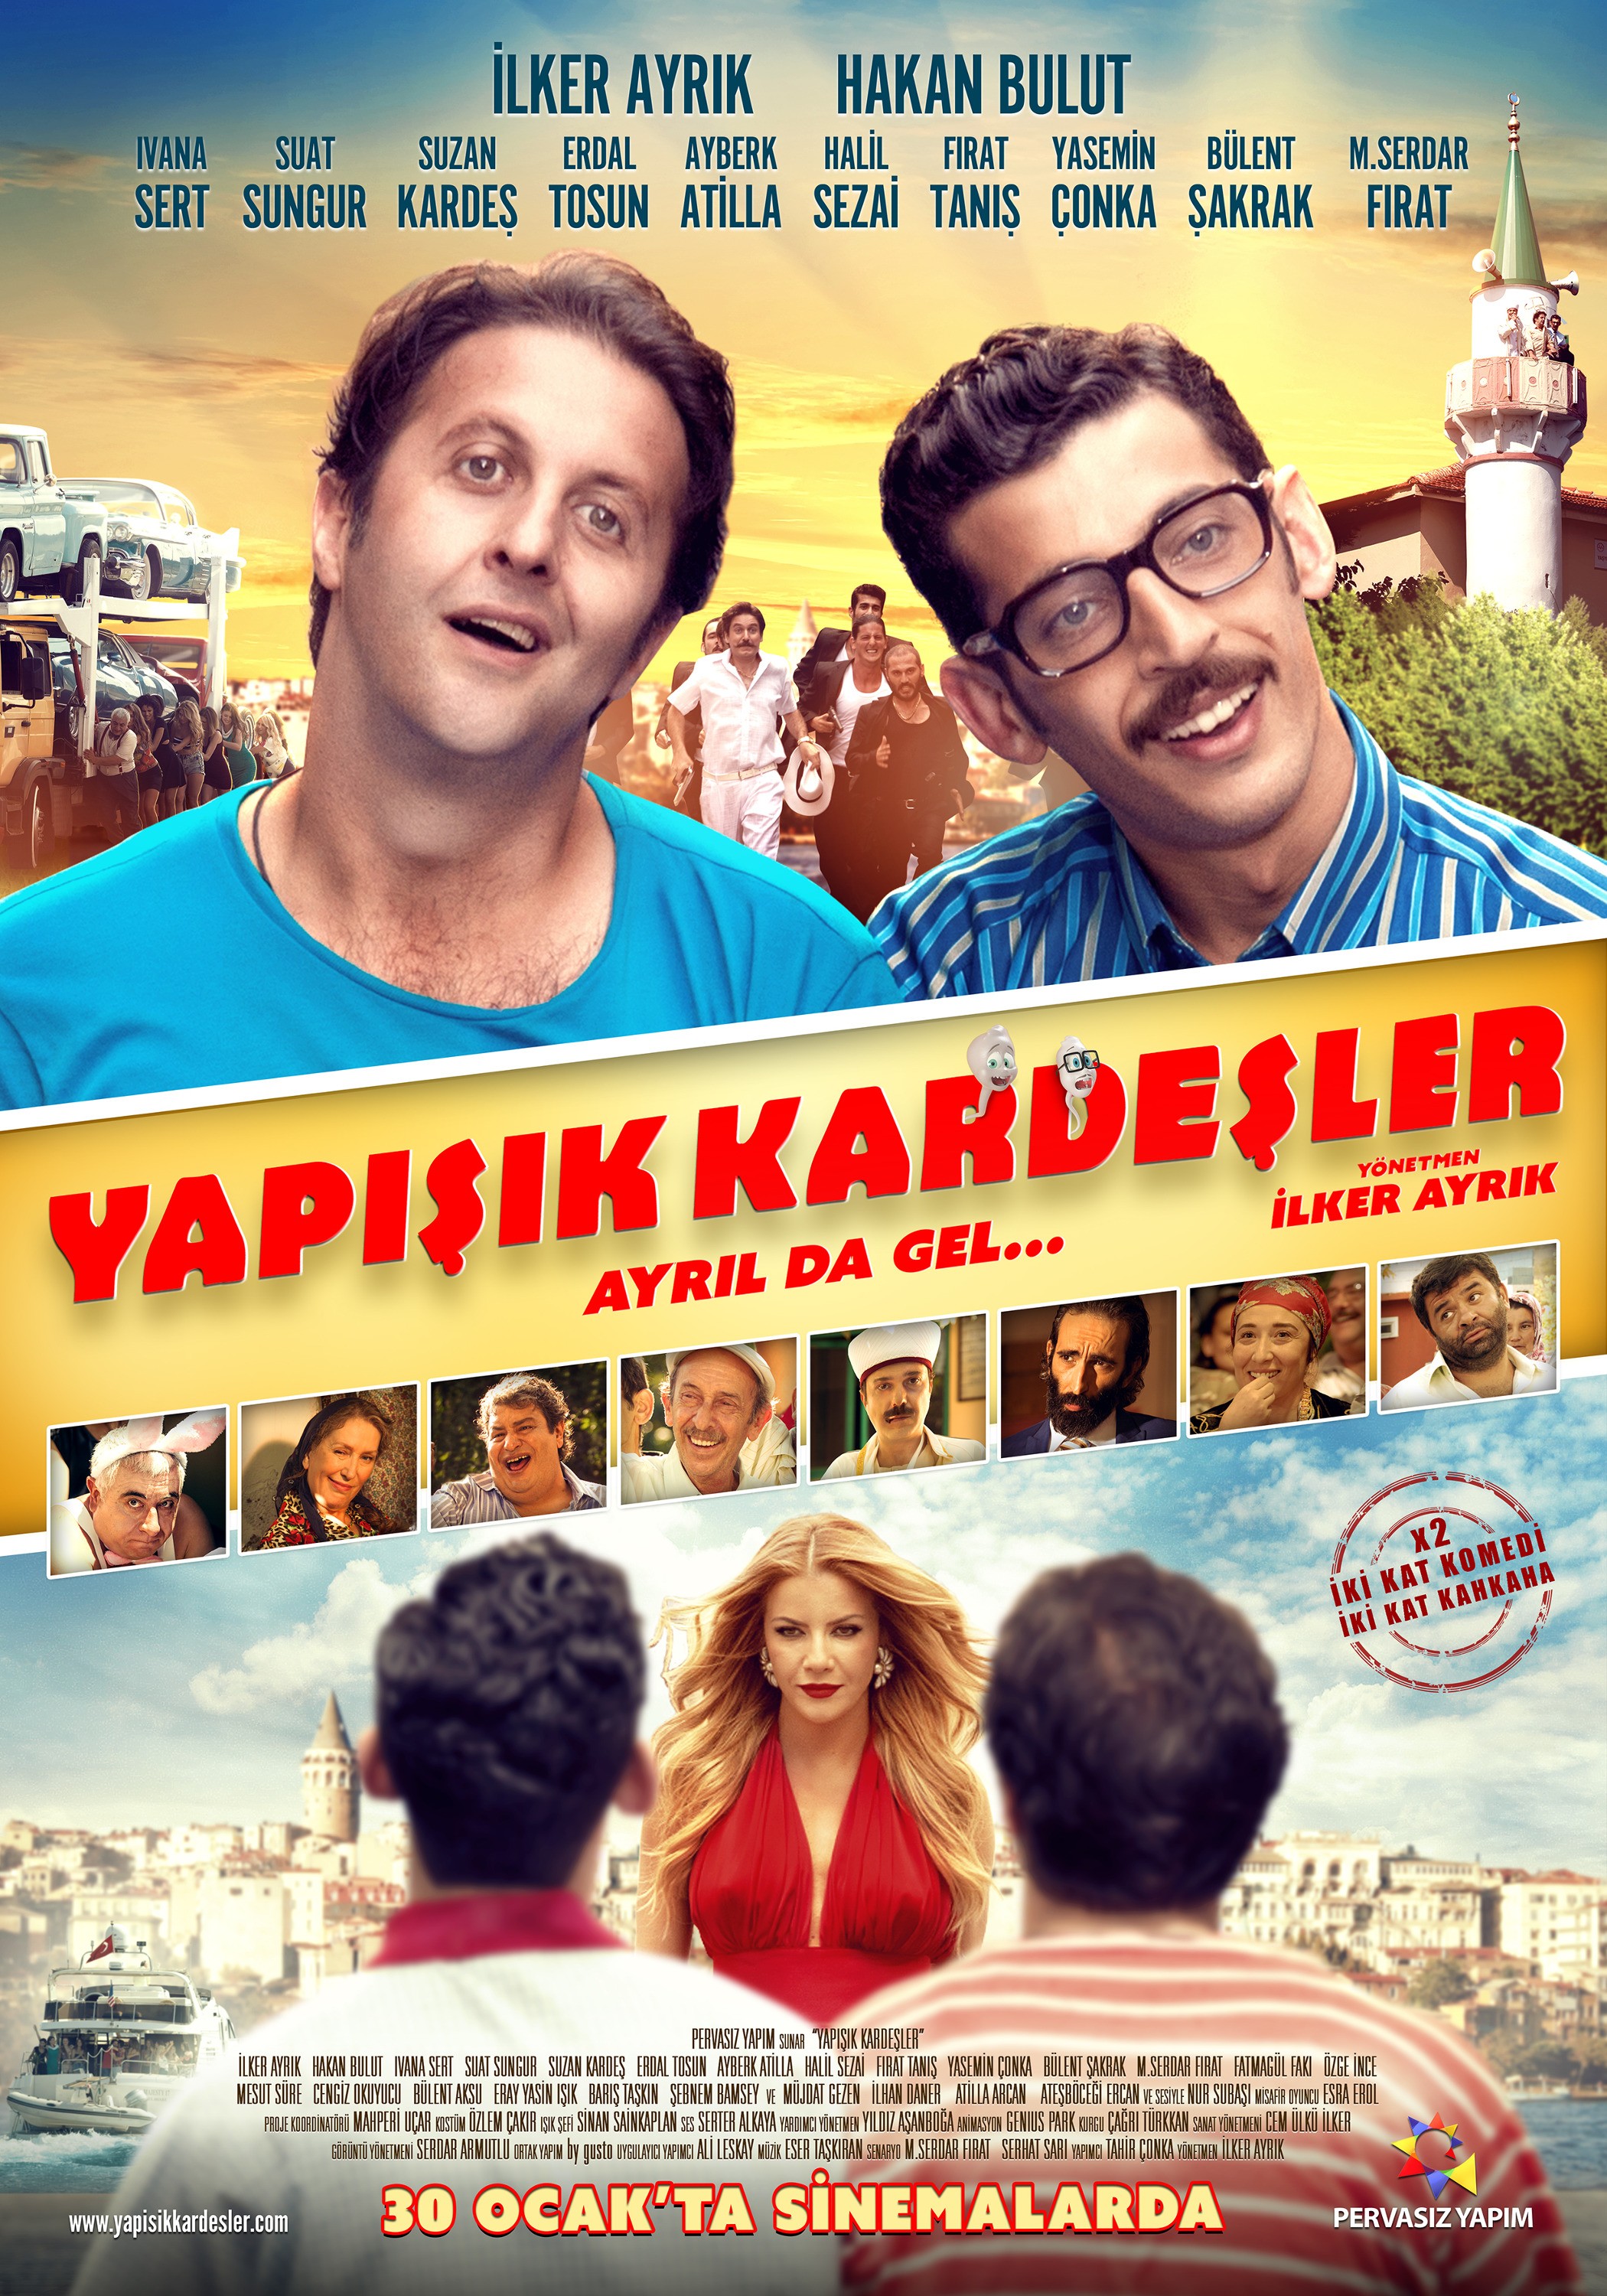 Mega Sized Movie Poster Image for Yapisik Kardesler 